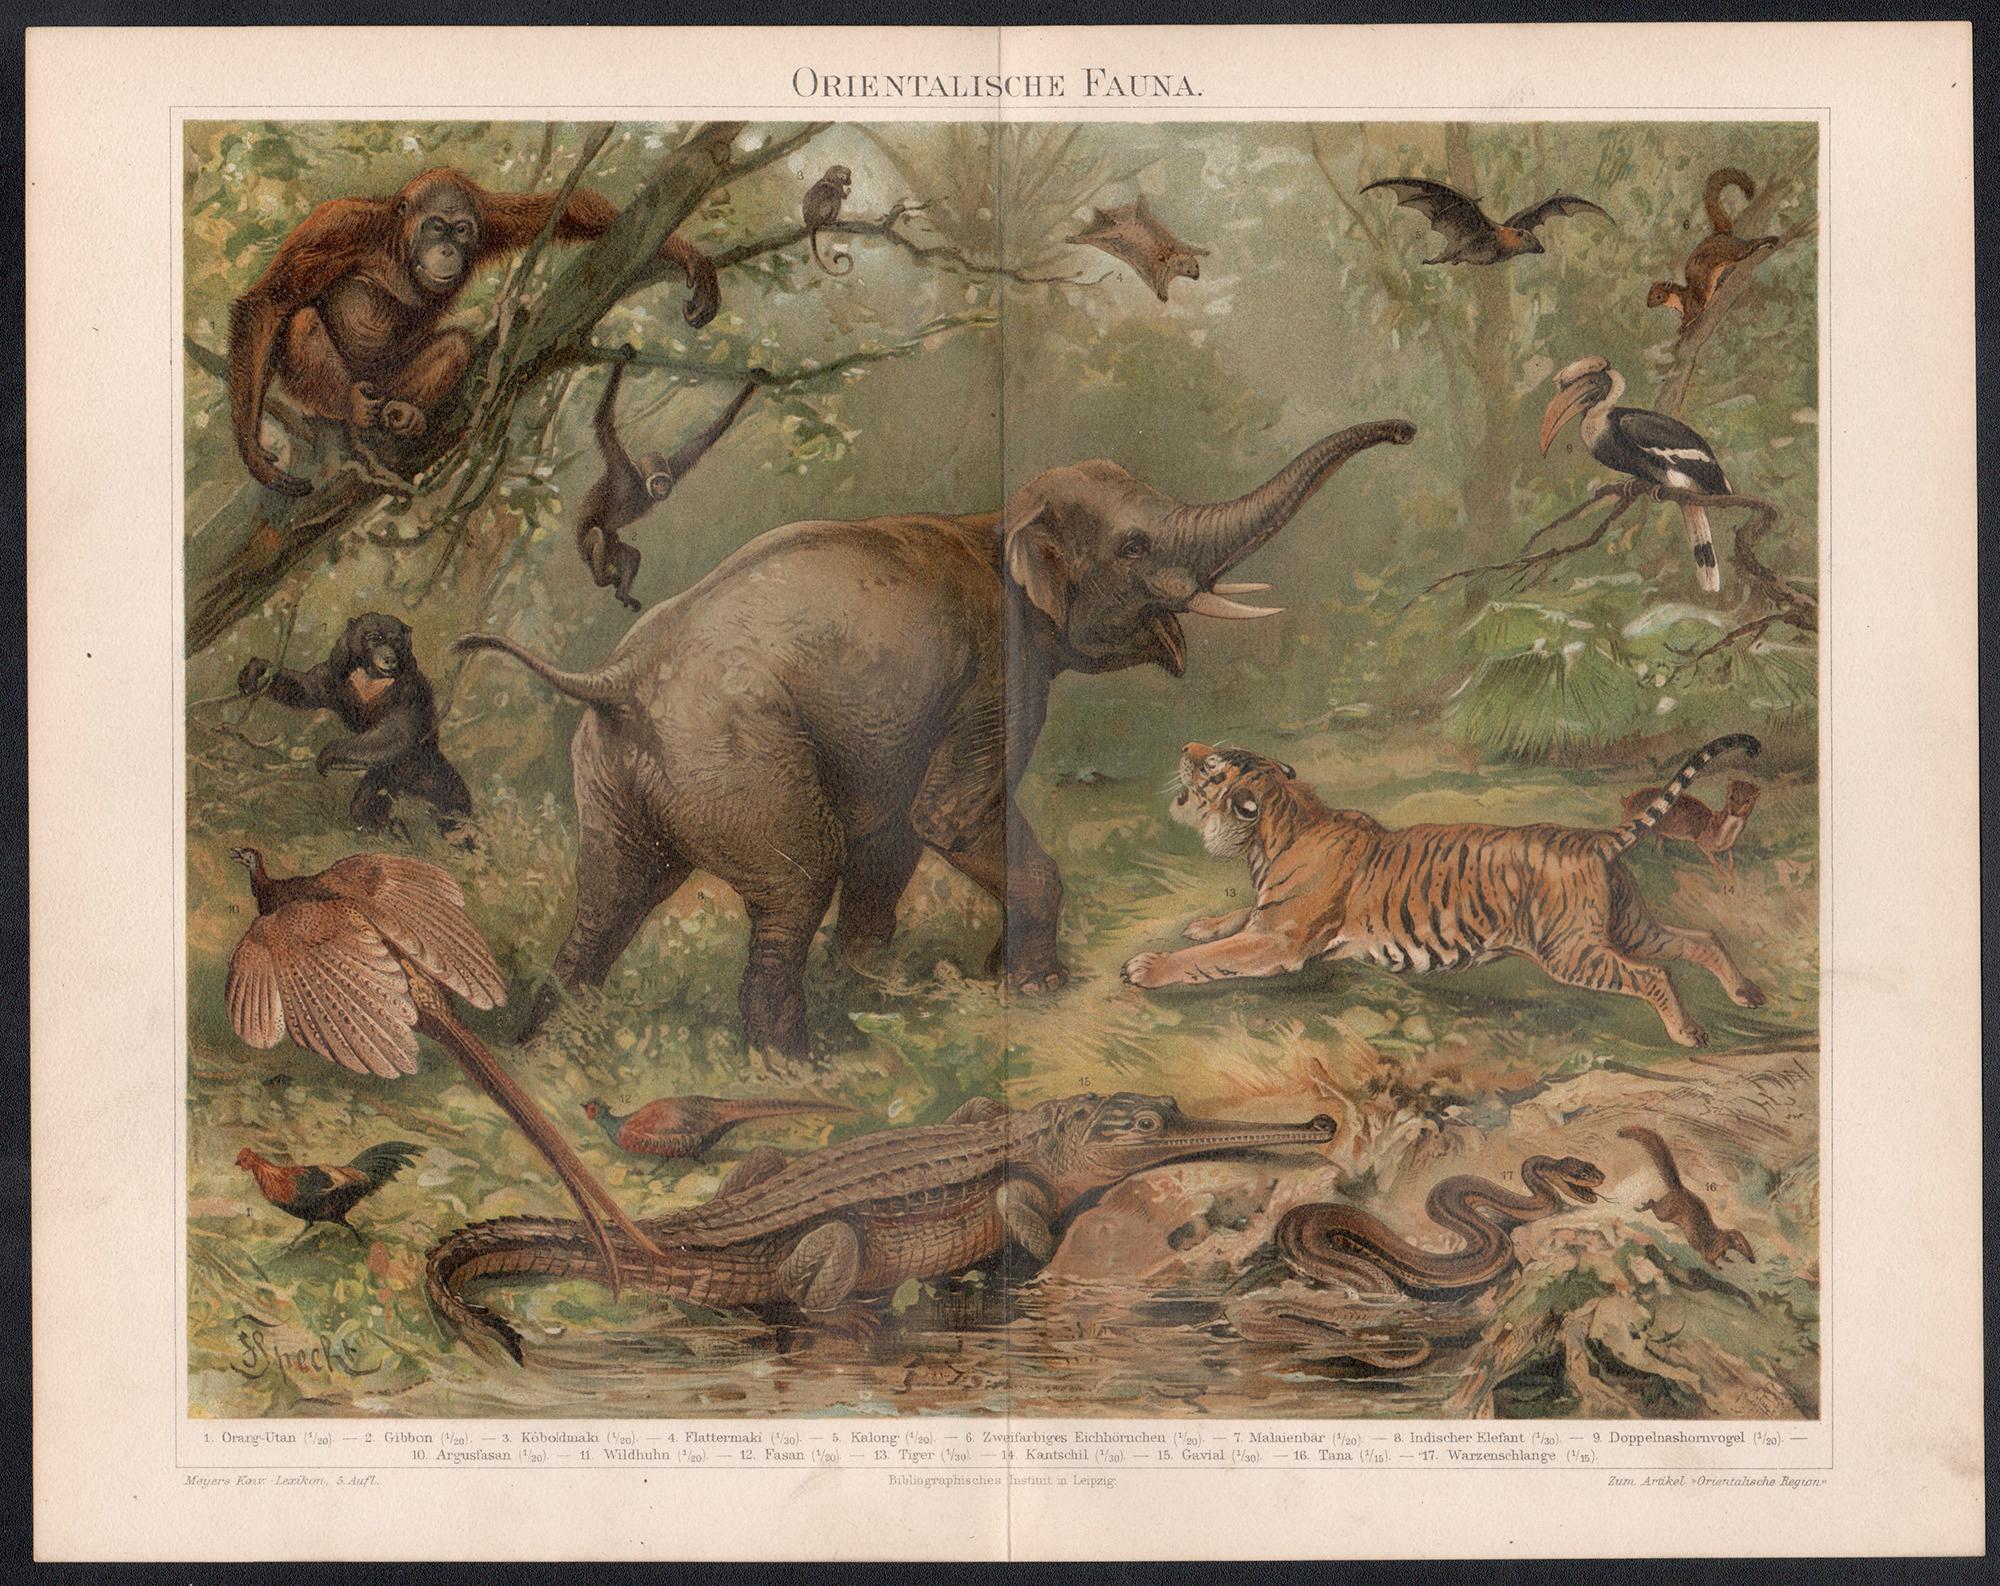 Orientalische Fauna (Oriental Fauna), deutsche antike Tierchromolithographie – Print von Unknown